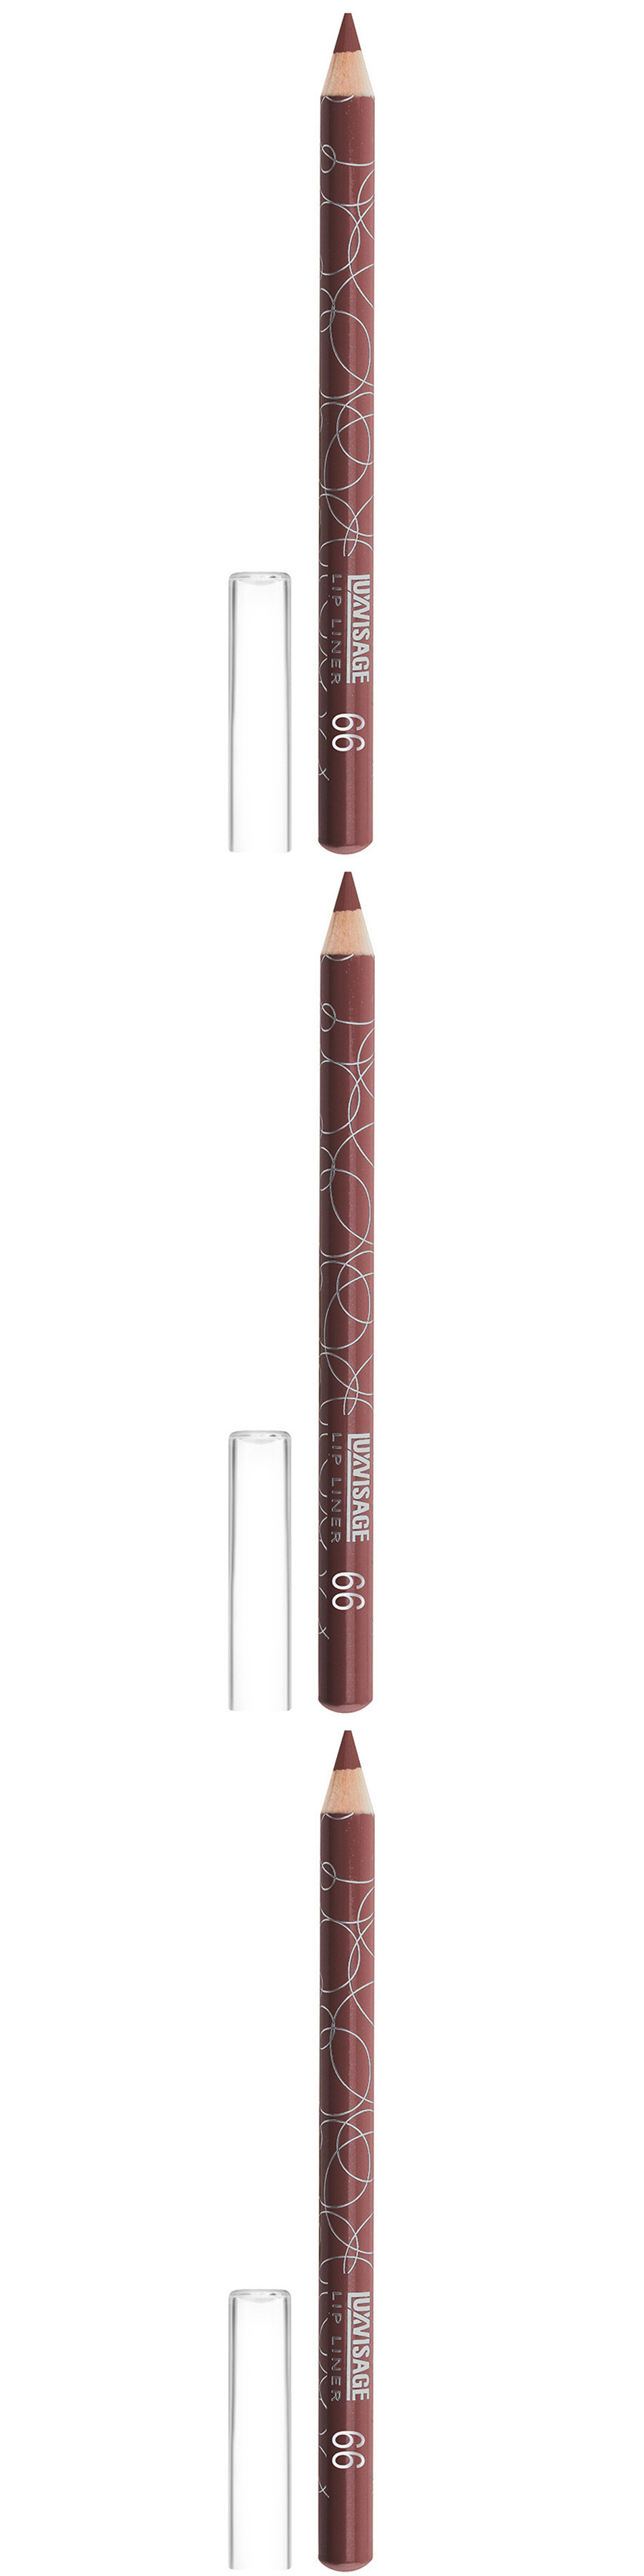 Карандаш для губ Luxvisage, тон 66, лилово-коричневый, 3 шт карандаш для губ тон 66 лилово коричневый